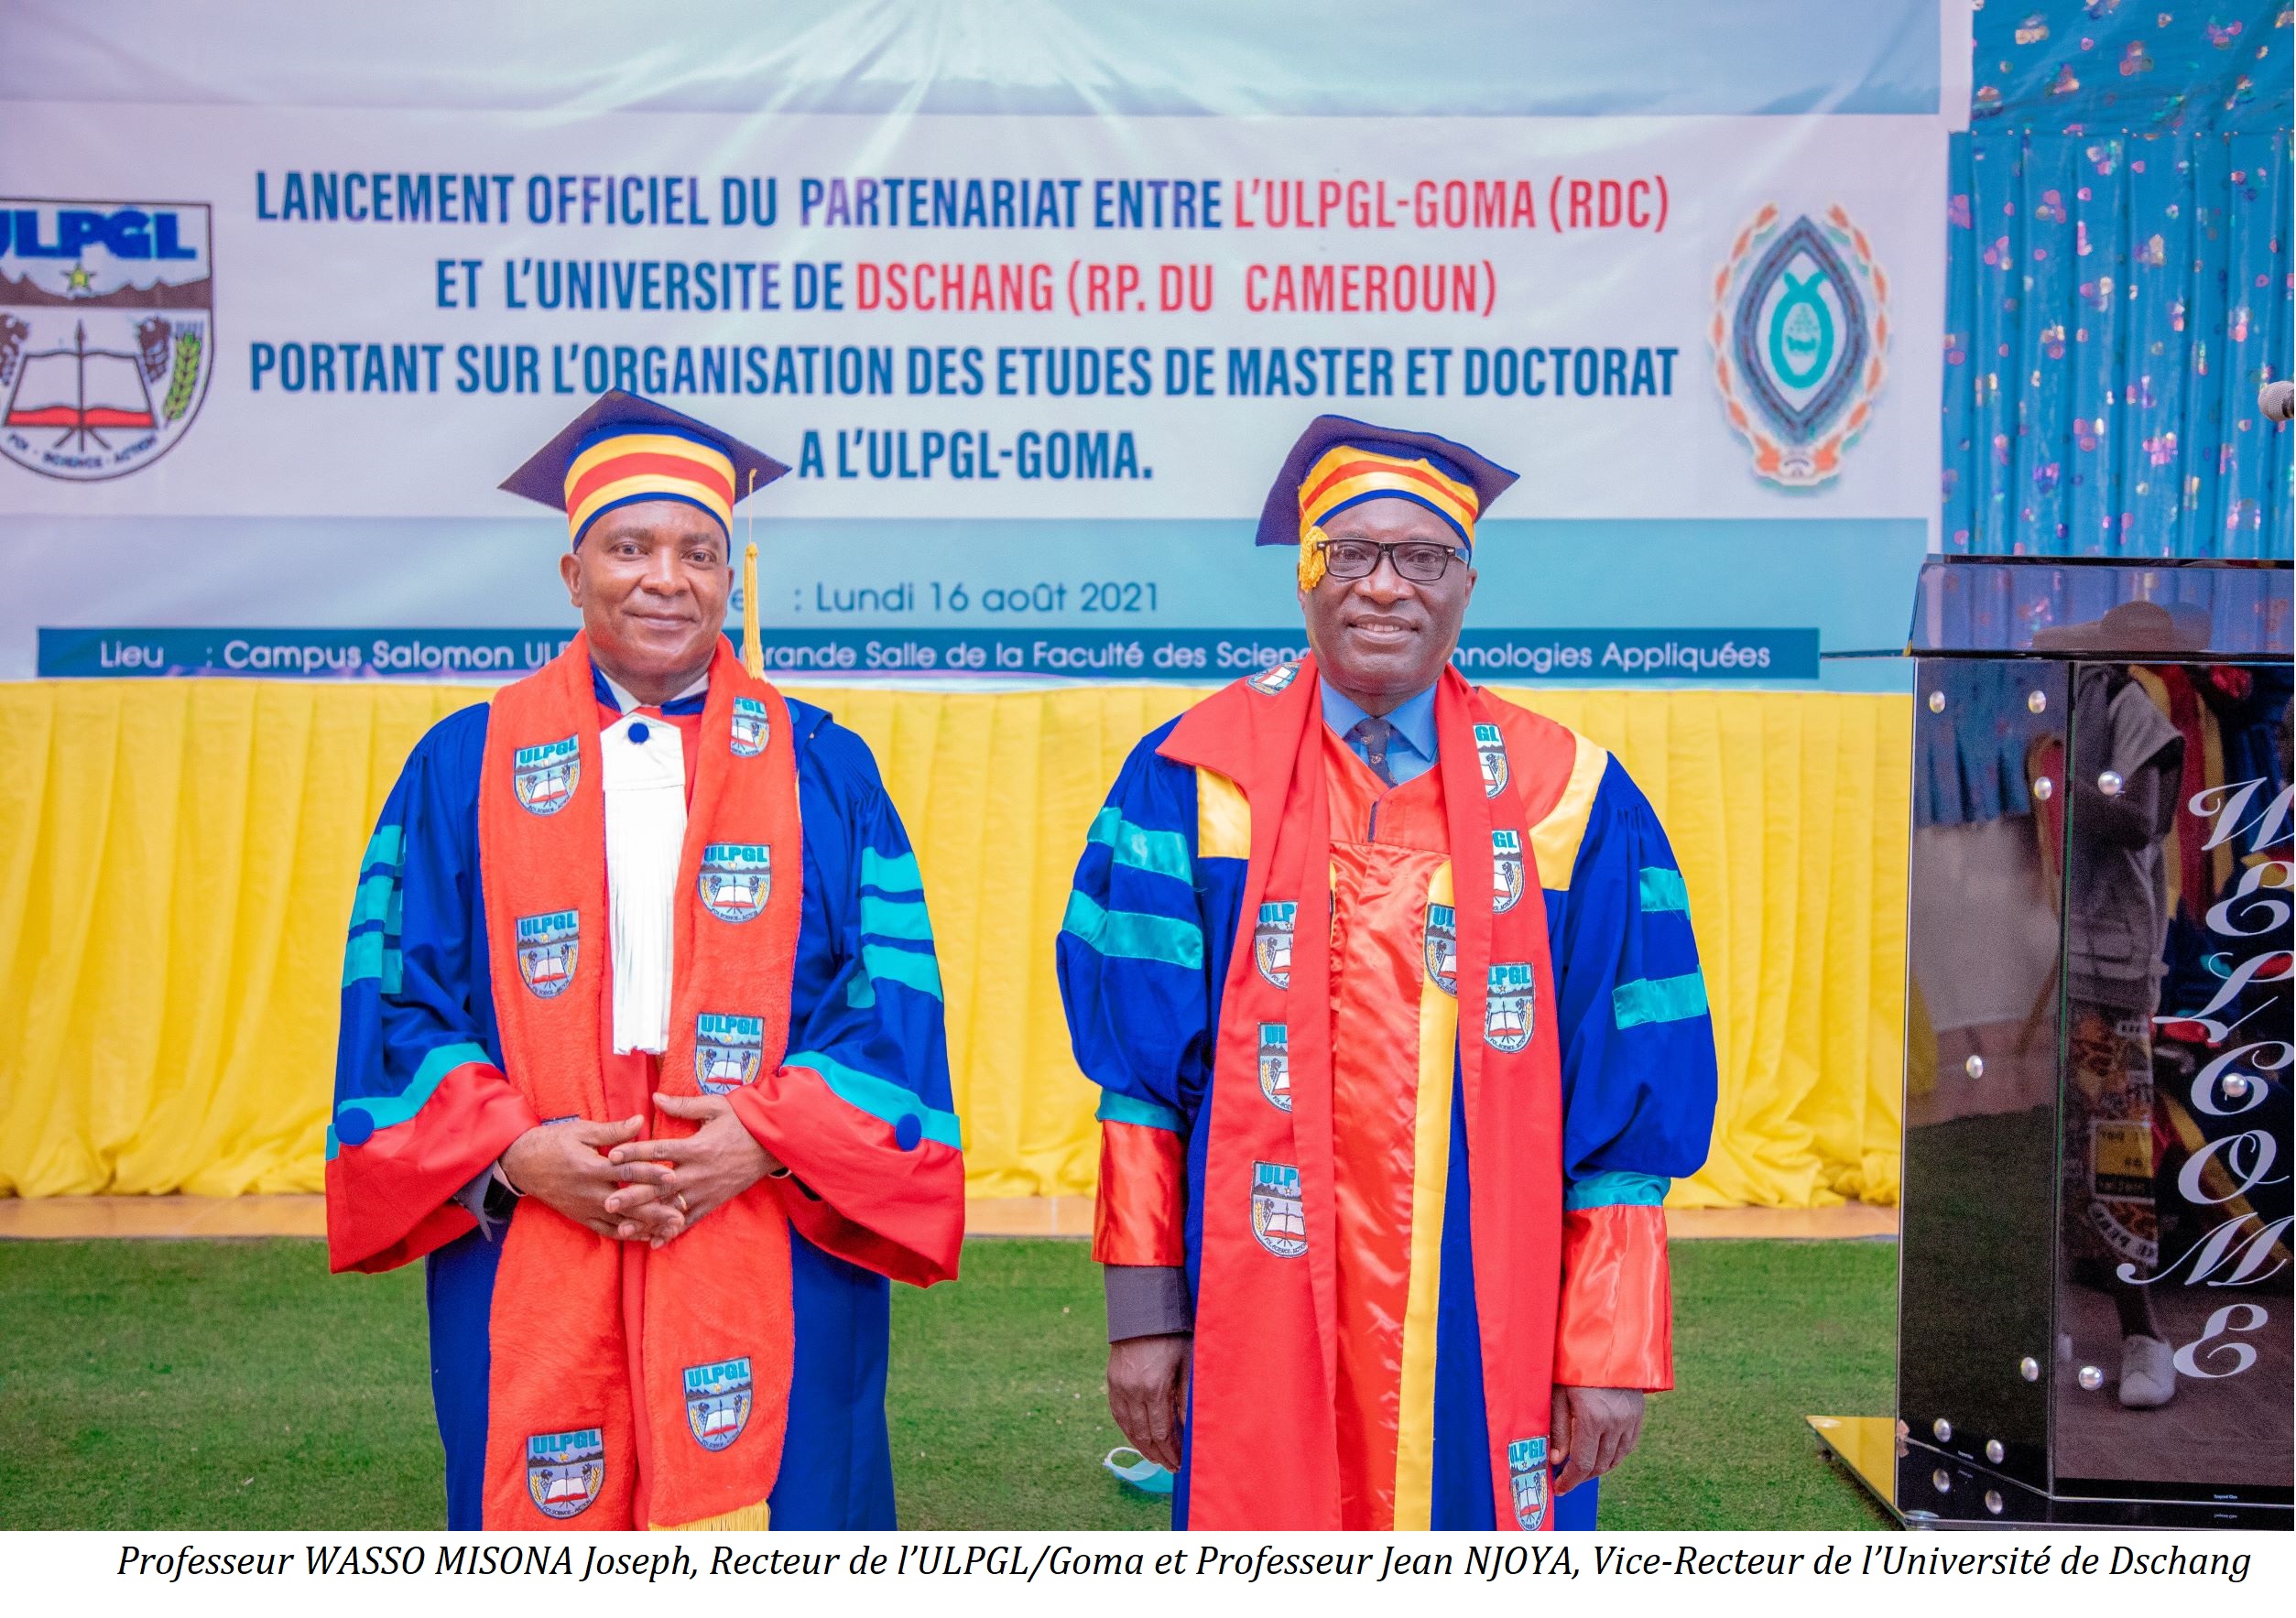 Programme de master et doctorat organisé à l’ULPGL/Goma en partenariat avec l’Université de Dschang au Cameroun/UDs